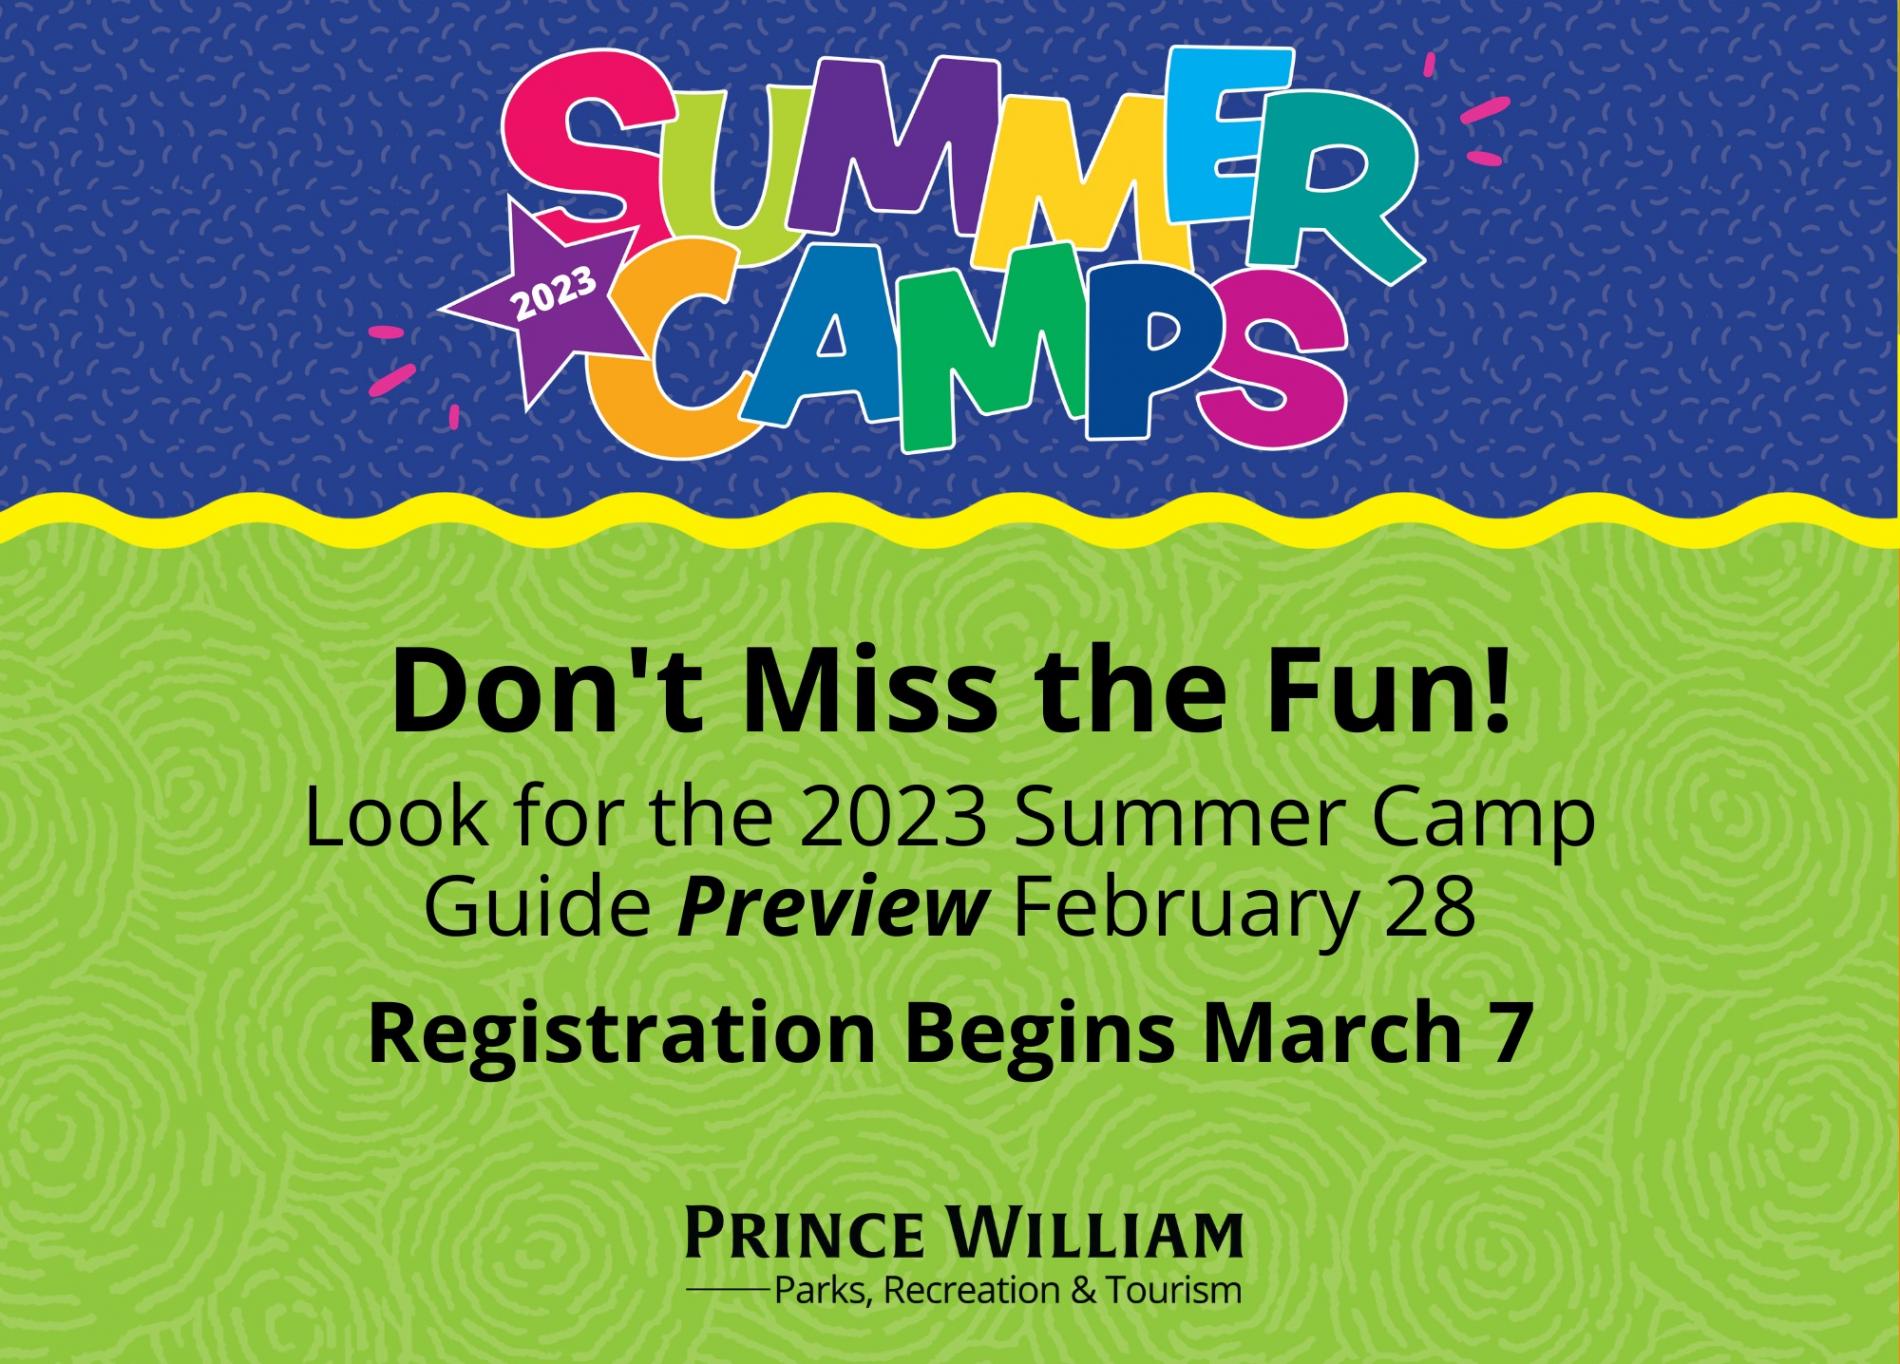 Summer Camp Registration Begins